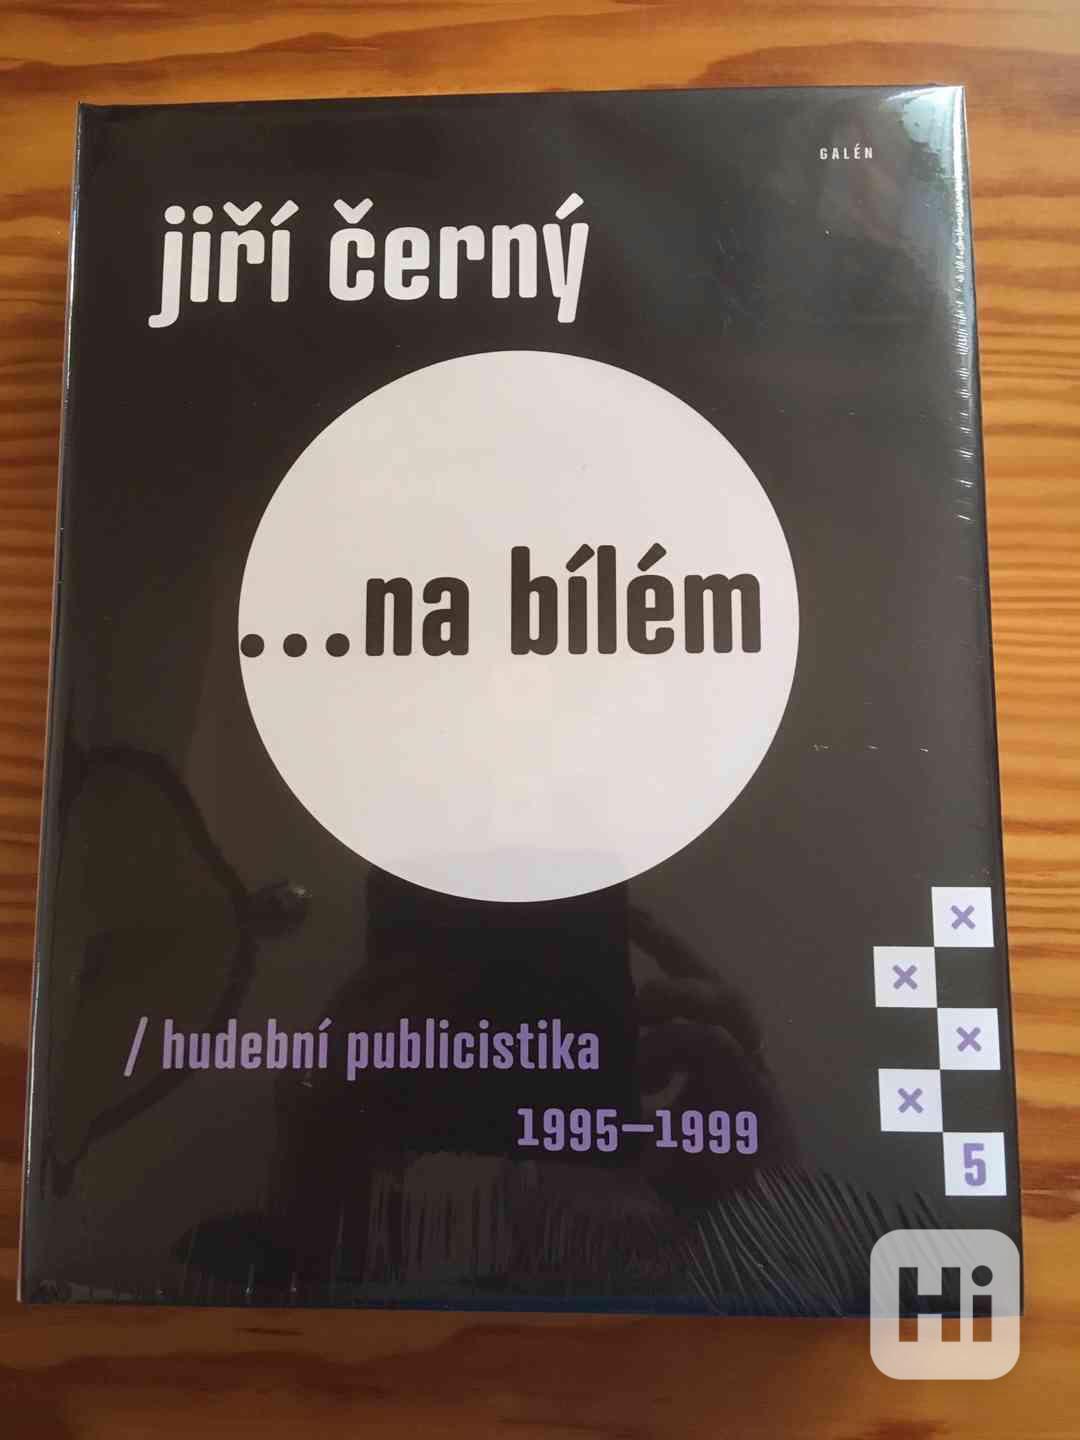 ... na bílém/hudební publicistika 1995-1999 - foto 1